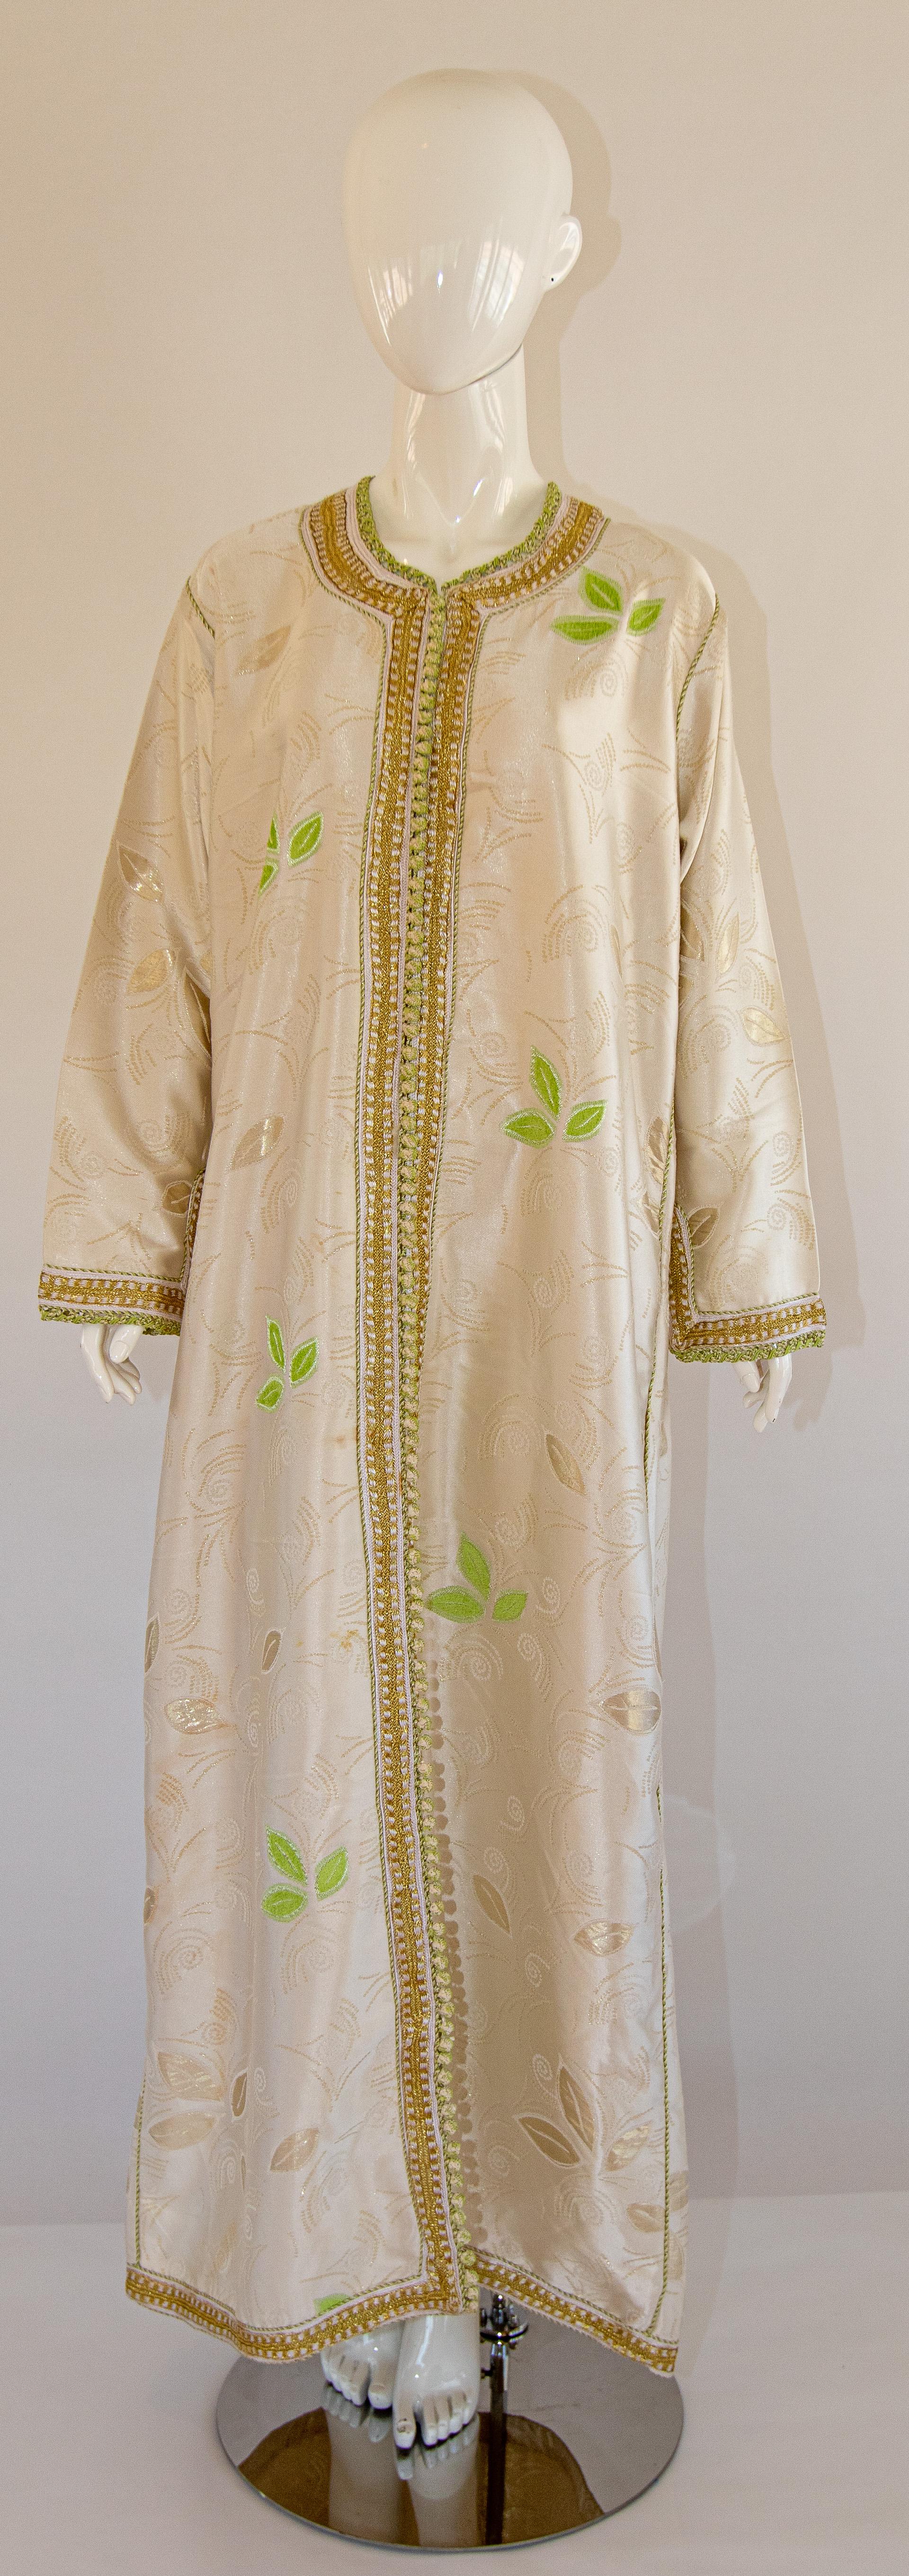 Eleganter marokkanischer Kaftan aus goldfarbenem Seidendamast, wunderschönes Vintage-Hostessen-Kleid.
Hellgrünes, florales Blattmuster auf Seidenkaftan, um 1970.
Exotisches, orientalisches, langes Maxi-Kaftankleid mit langen Ärmeln aus schimmerndem